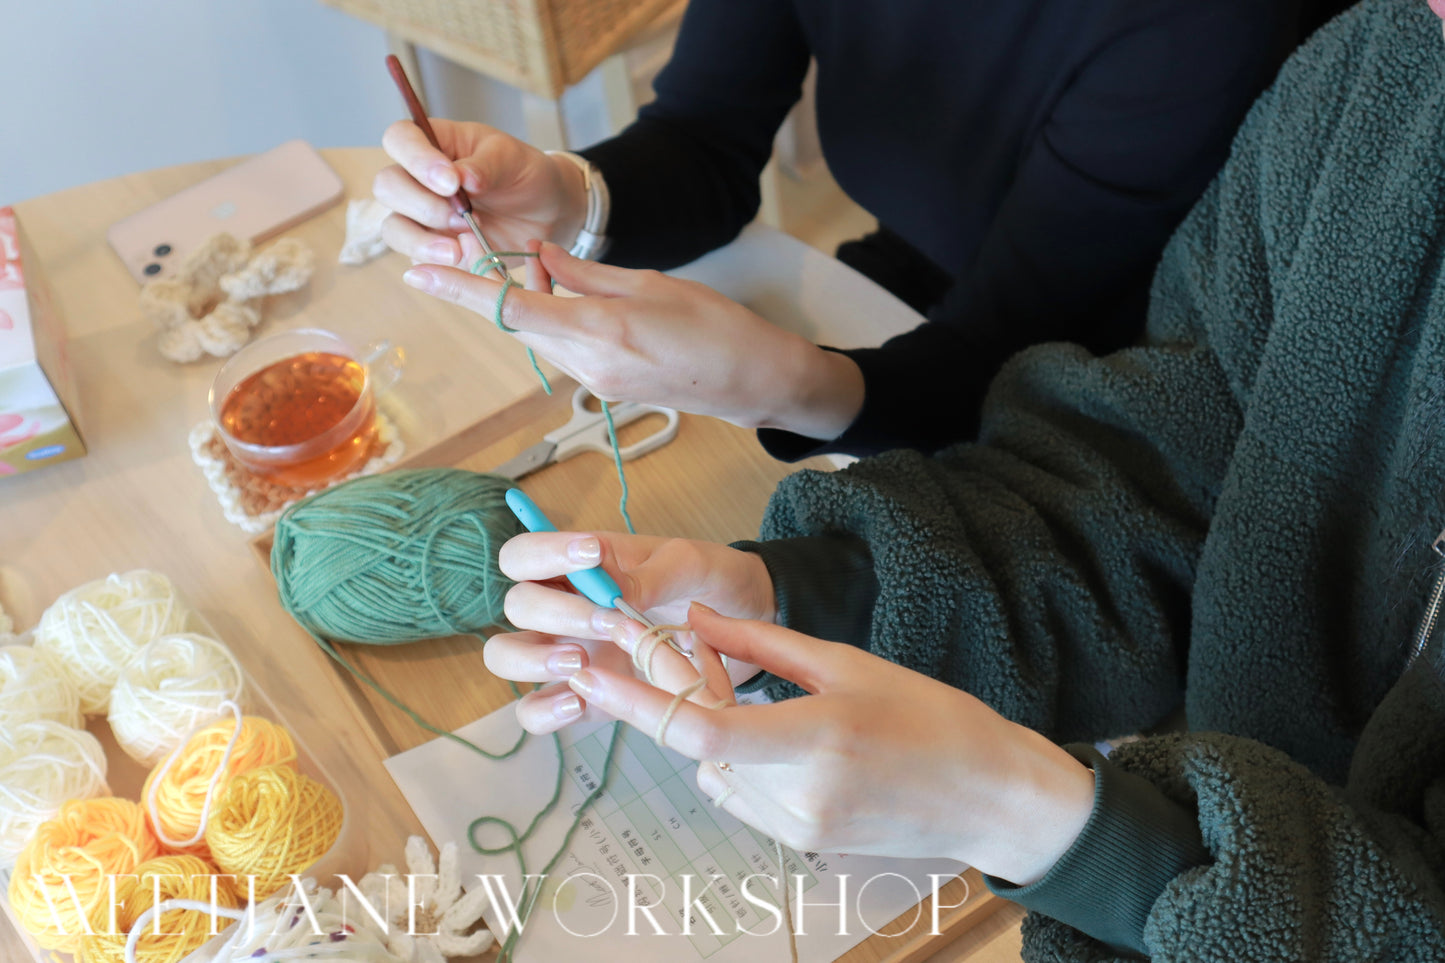 Crochet Workshop| Personalised workshop